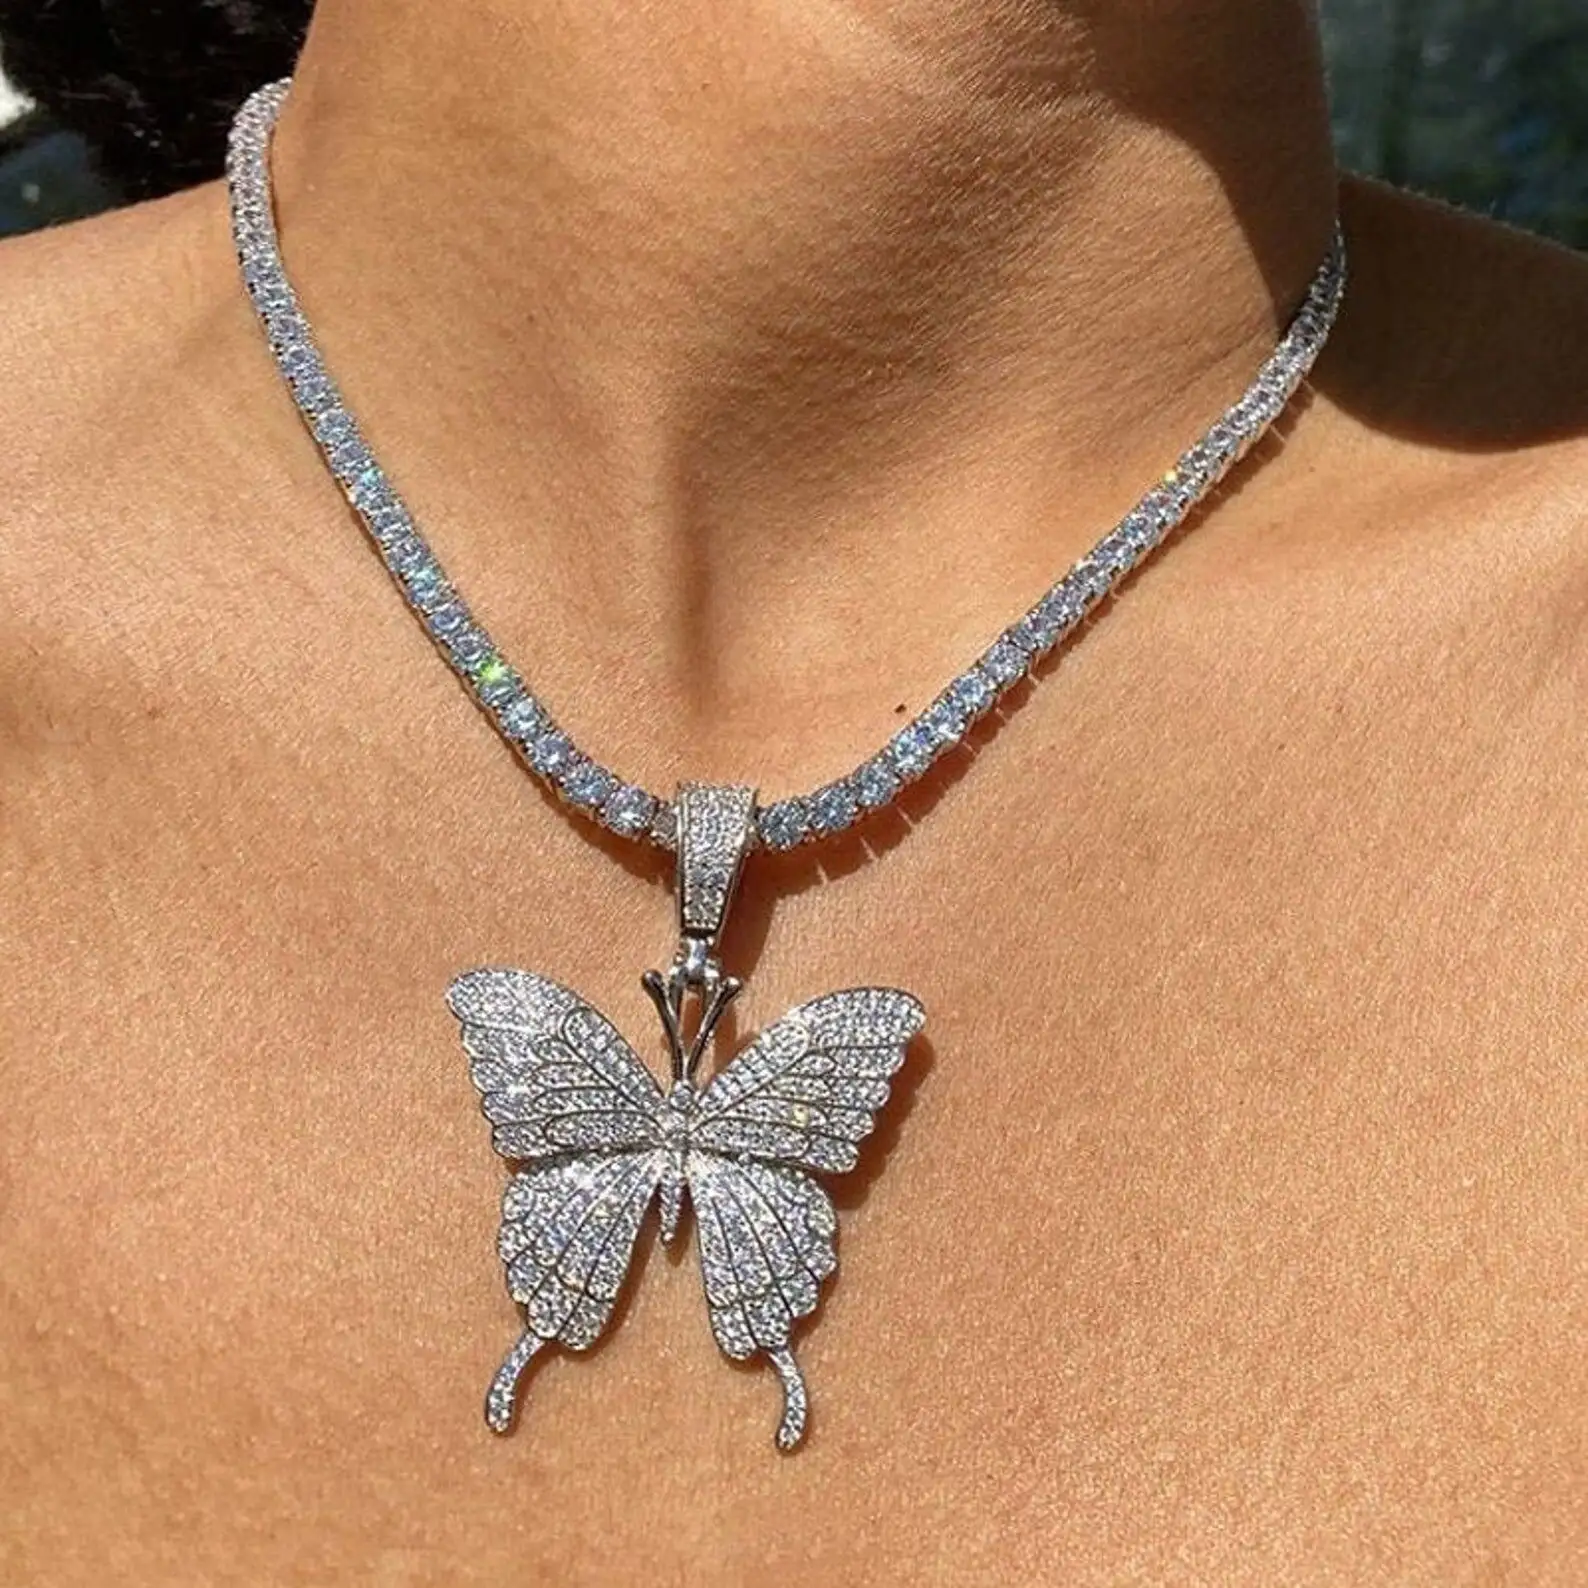 Toptan kelebek kolye kadın Rhinestones kelebek kolye kolye Bling kristal takı hediye kıvılcım